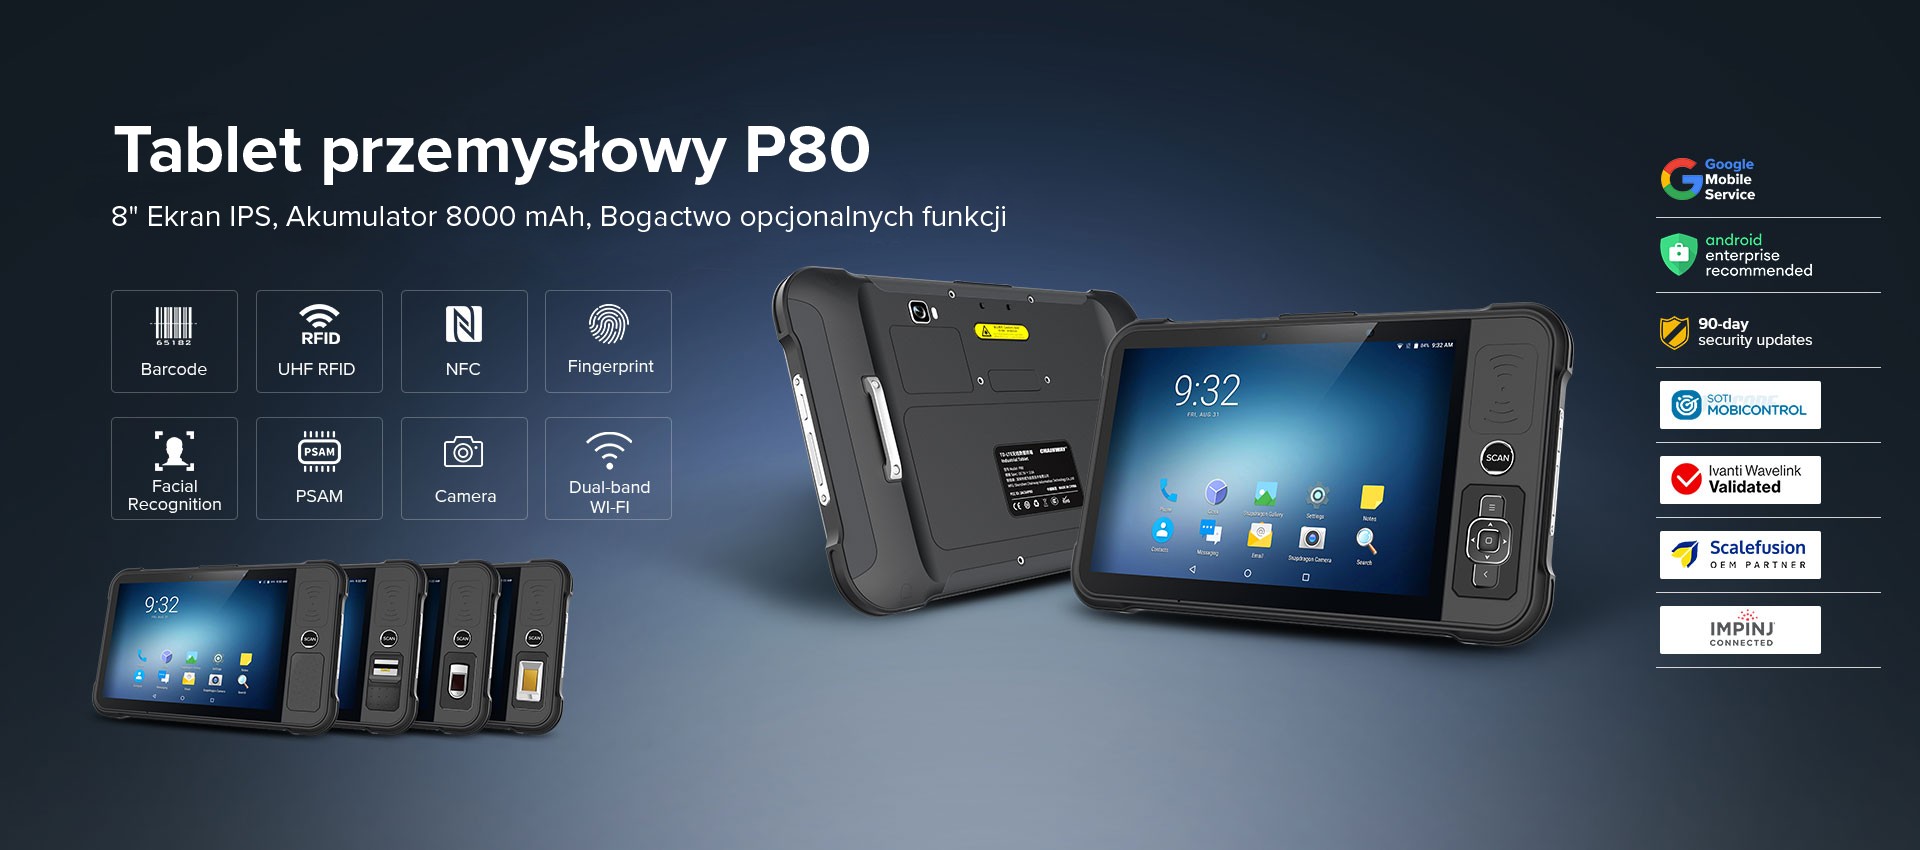 Chainway P80 Tablet przemysłowy Android 9 8″ ekran, akumulator 8000 mAh, mnogość dostępnych funkcji